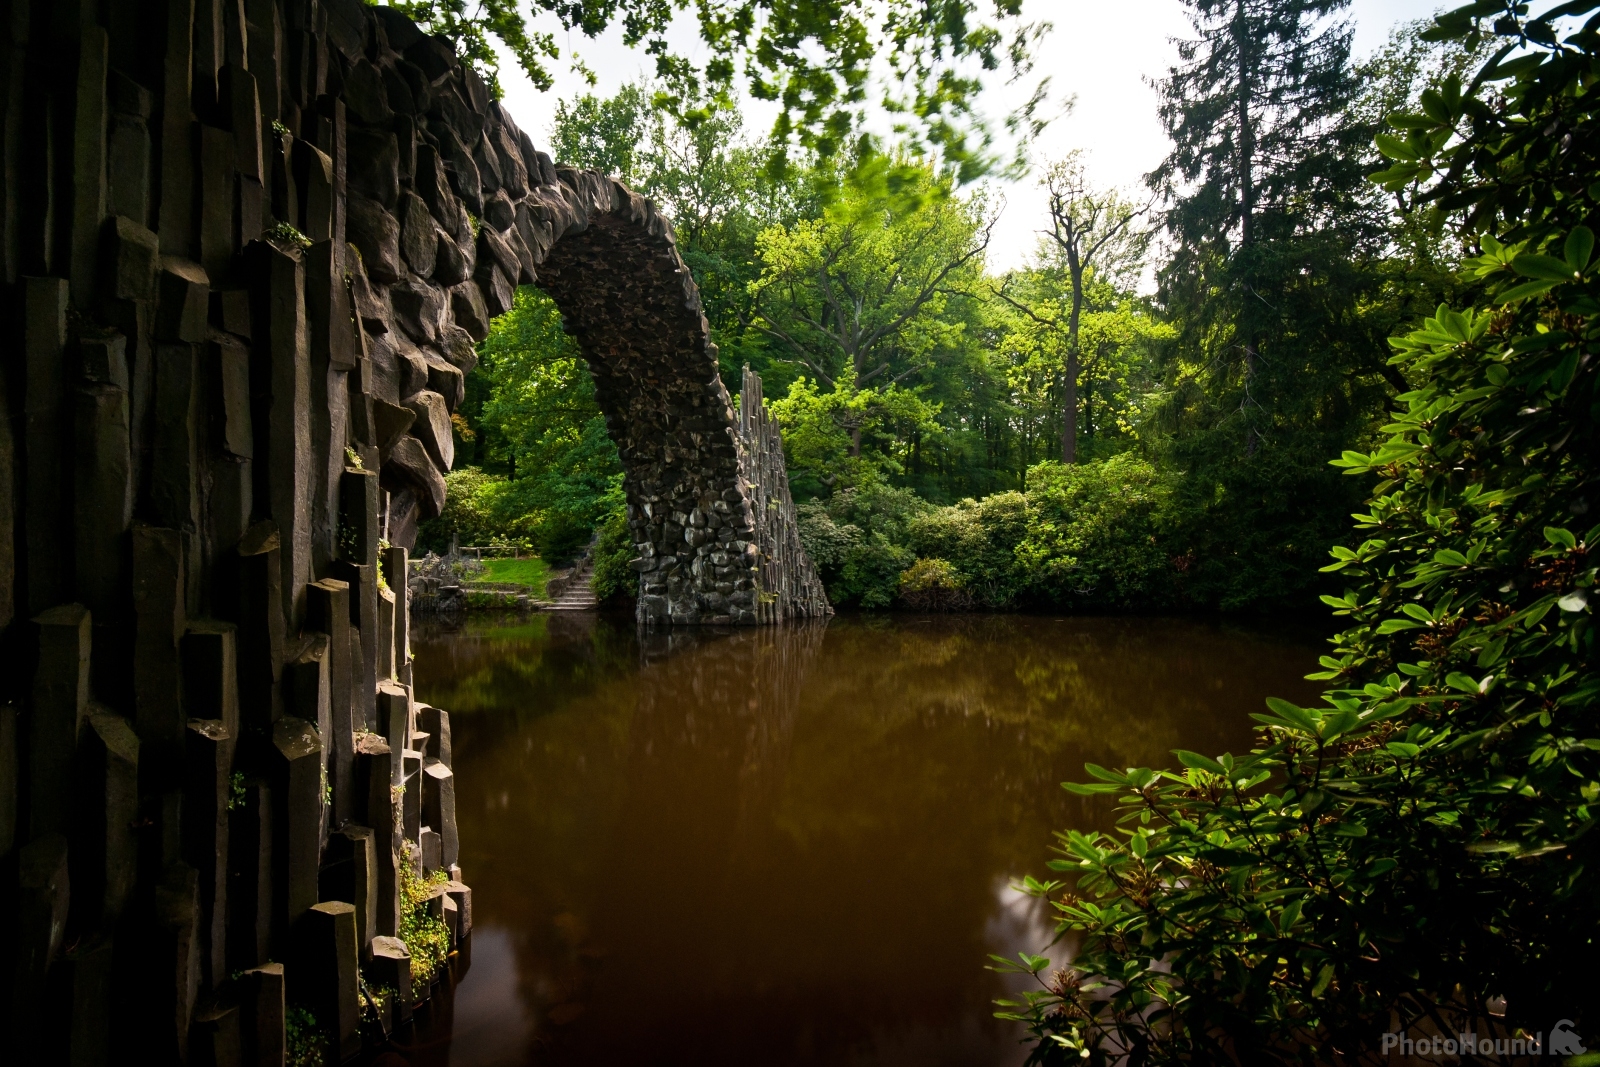 Image of Rakotzbrücke by VOJTa Herout